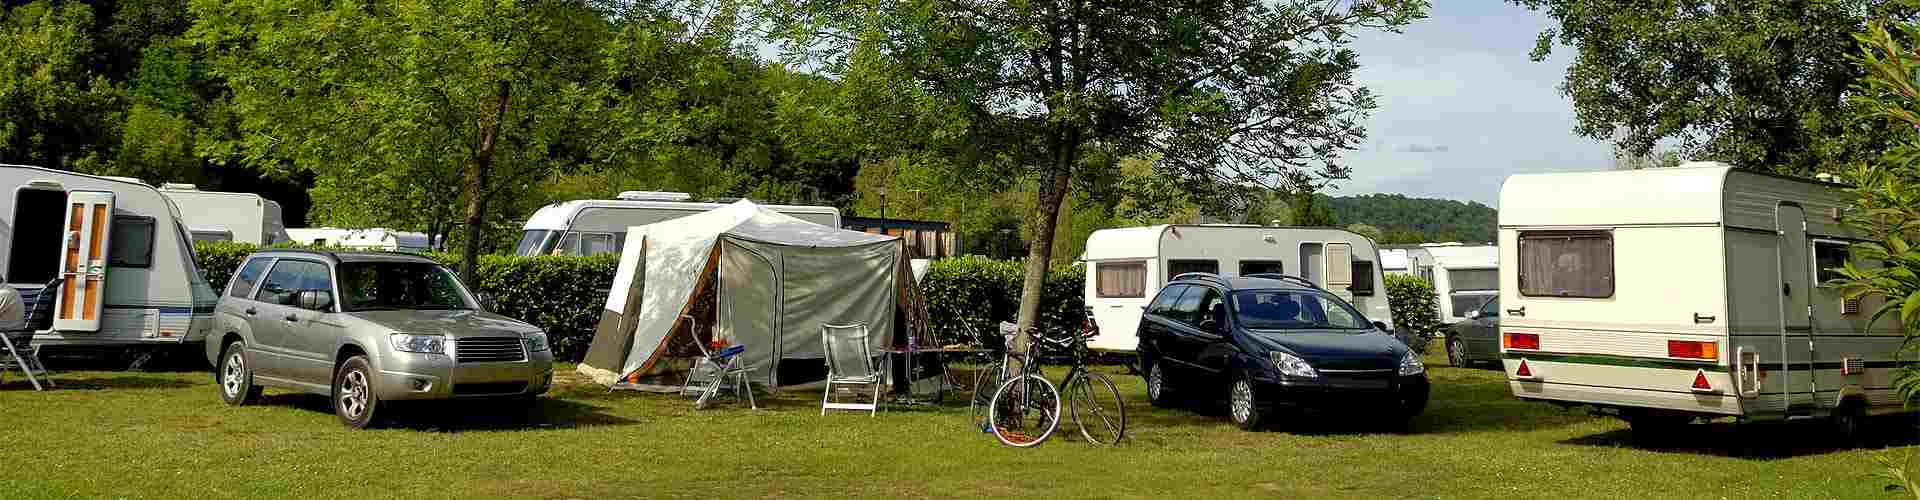 Campings y bungalows en Alborge